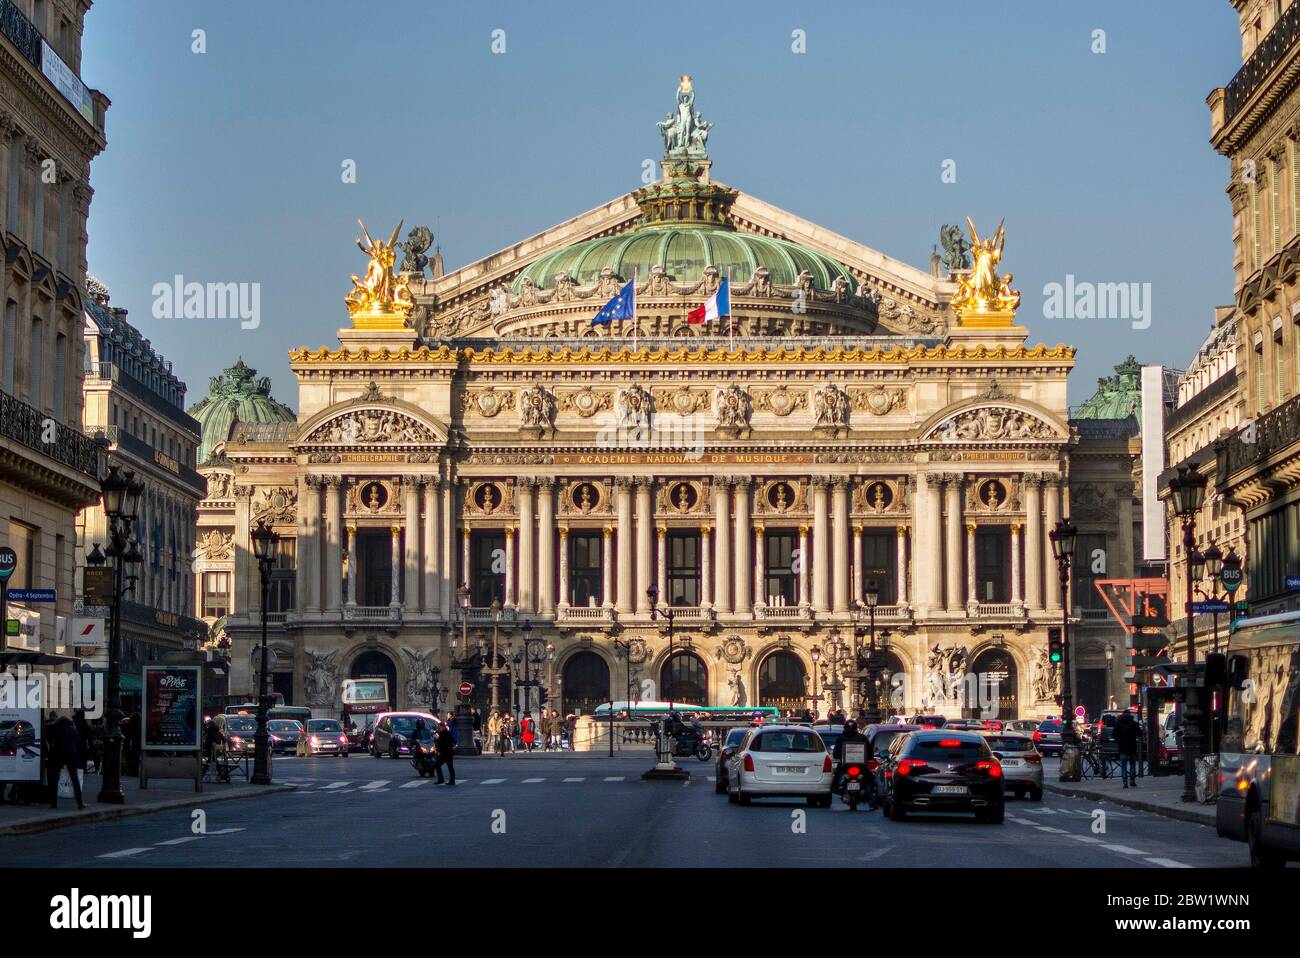 L'Opéra de Paris (Palais Garnier), place de l'Opéra, Paris 9e arr. Paris. France Banque D'Images